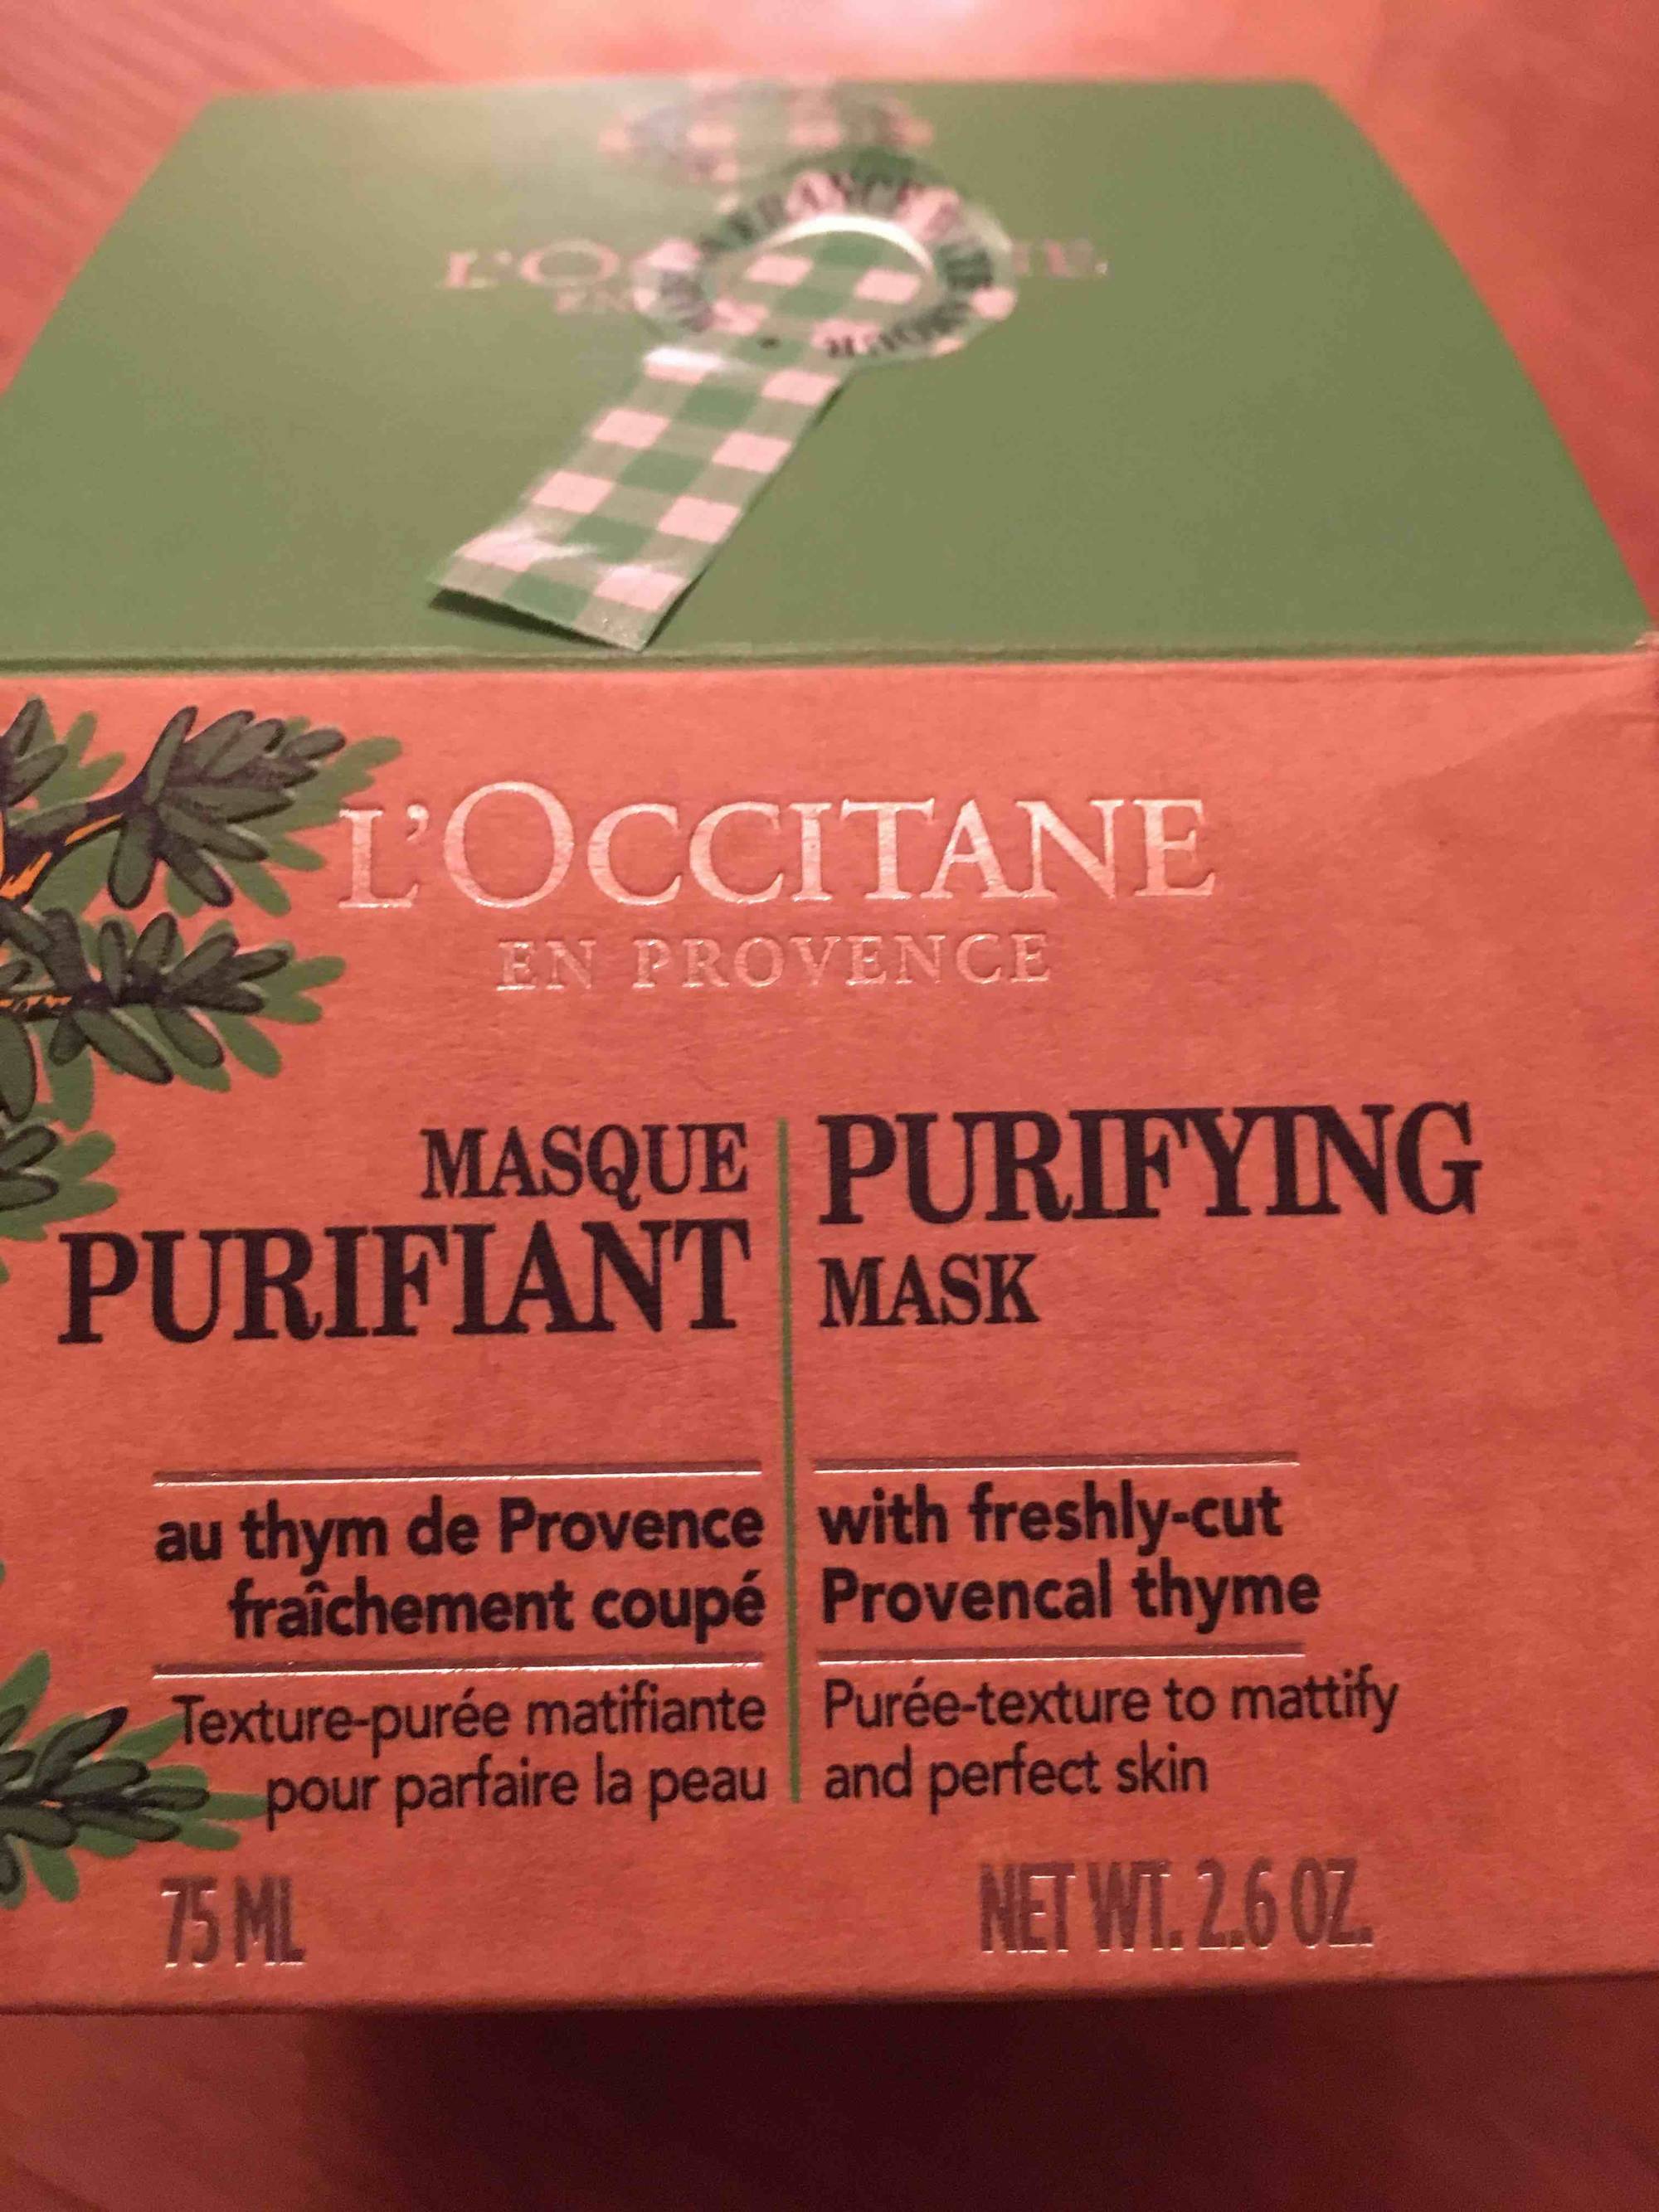 L'OCCITANE EN PROVENCE - Masque purifiant au thym de Provence